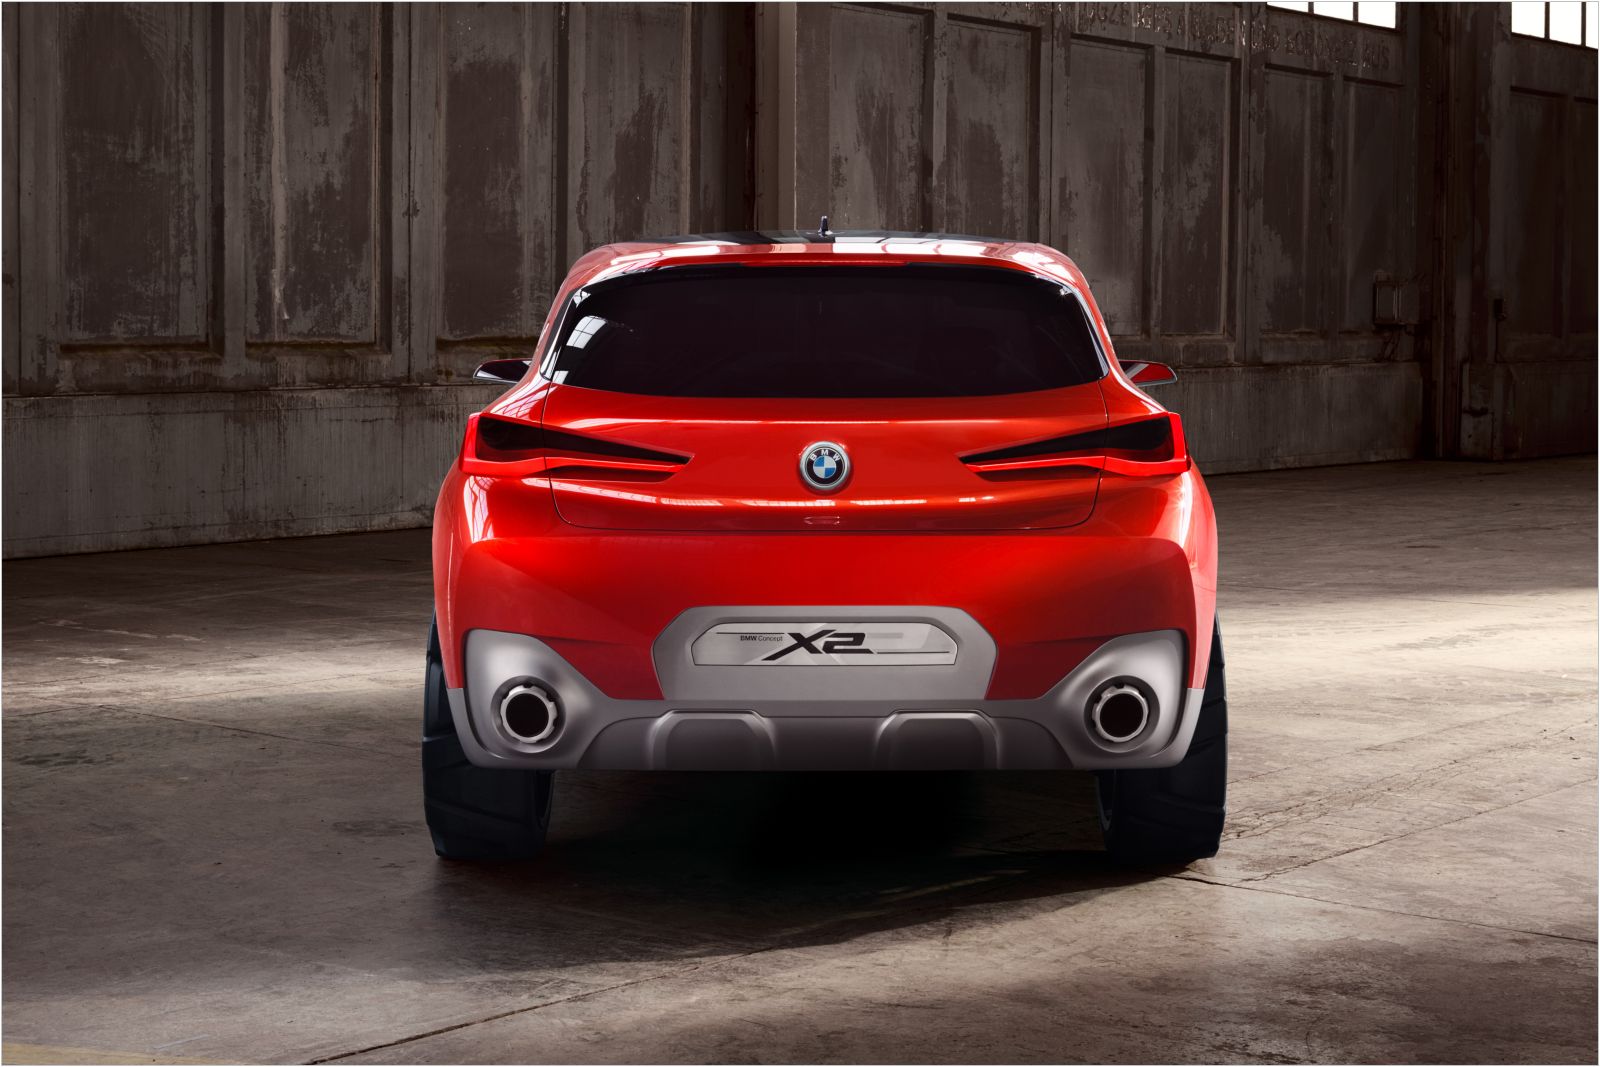 BMW X2 Concept, 1600x1067px, img-4